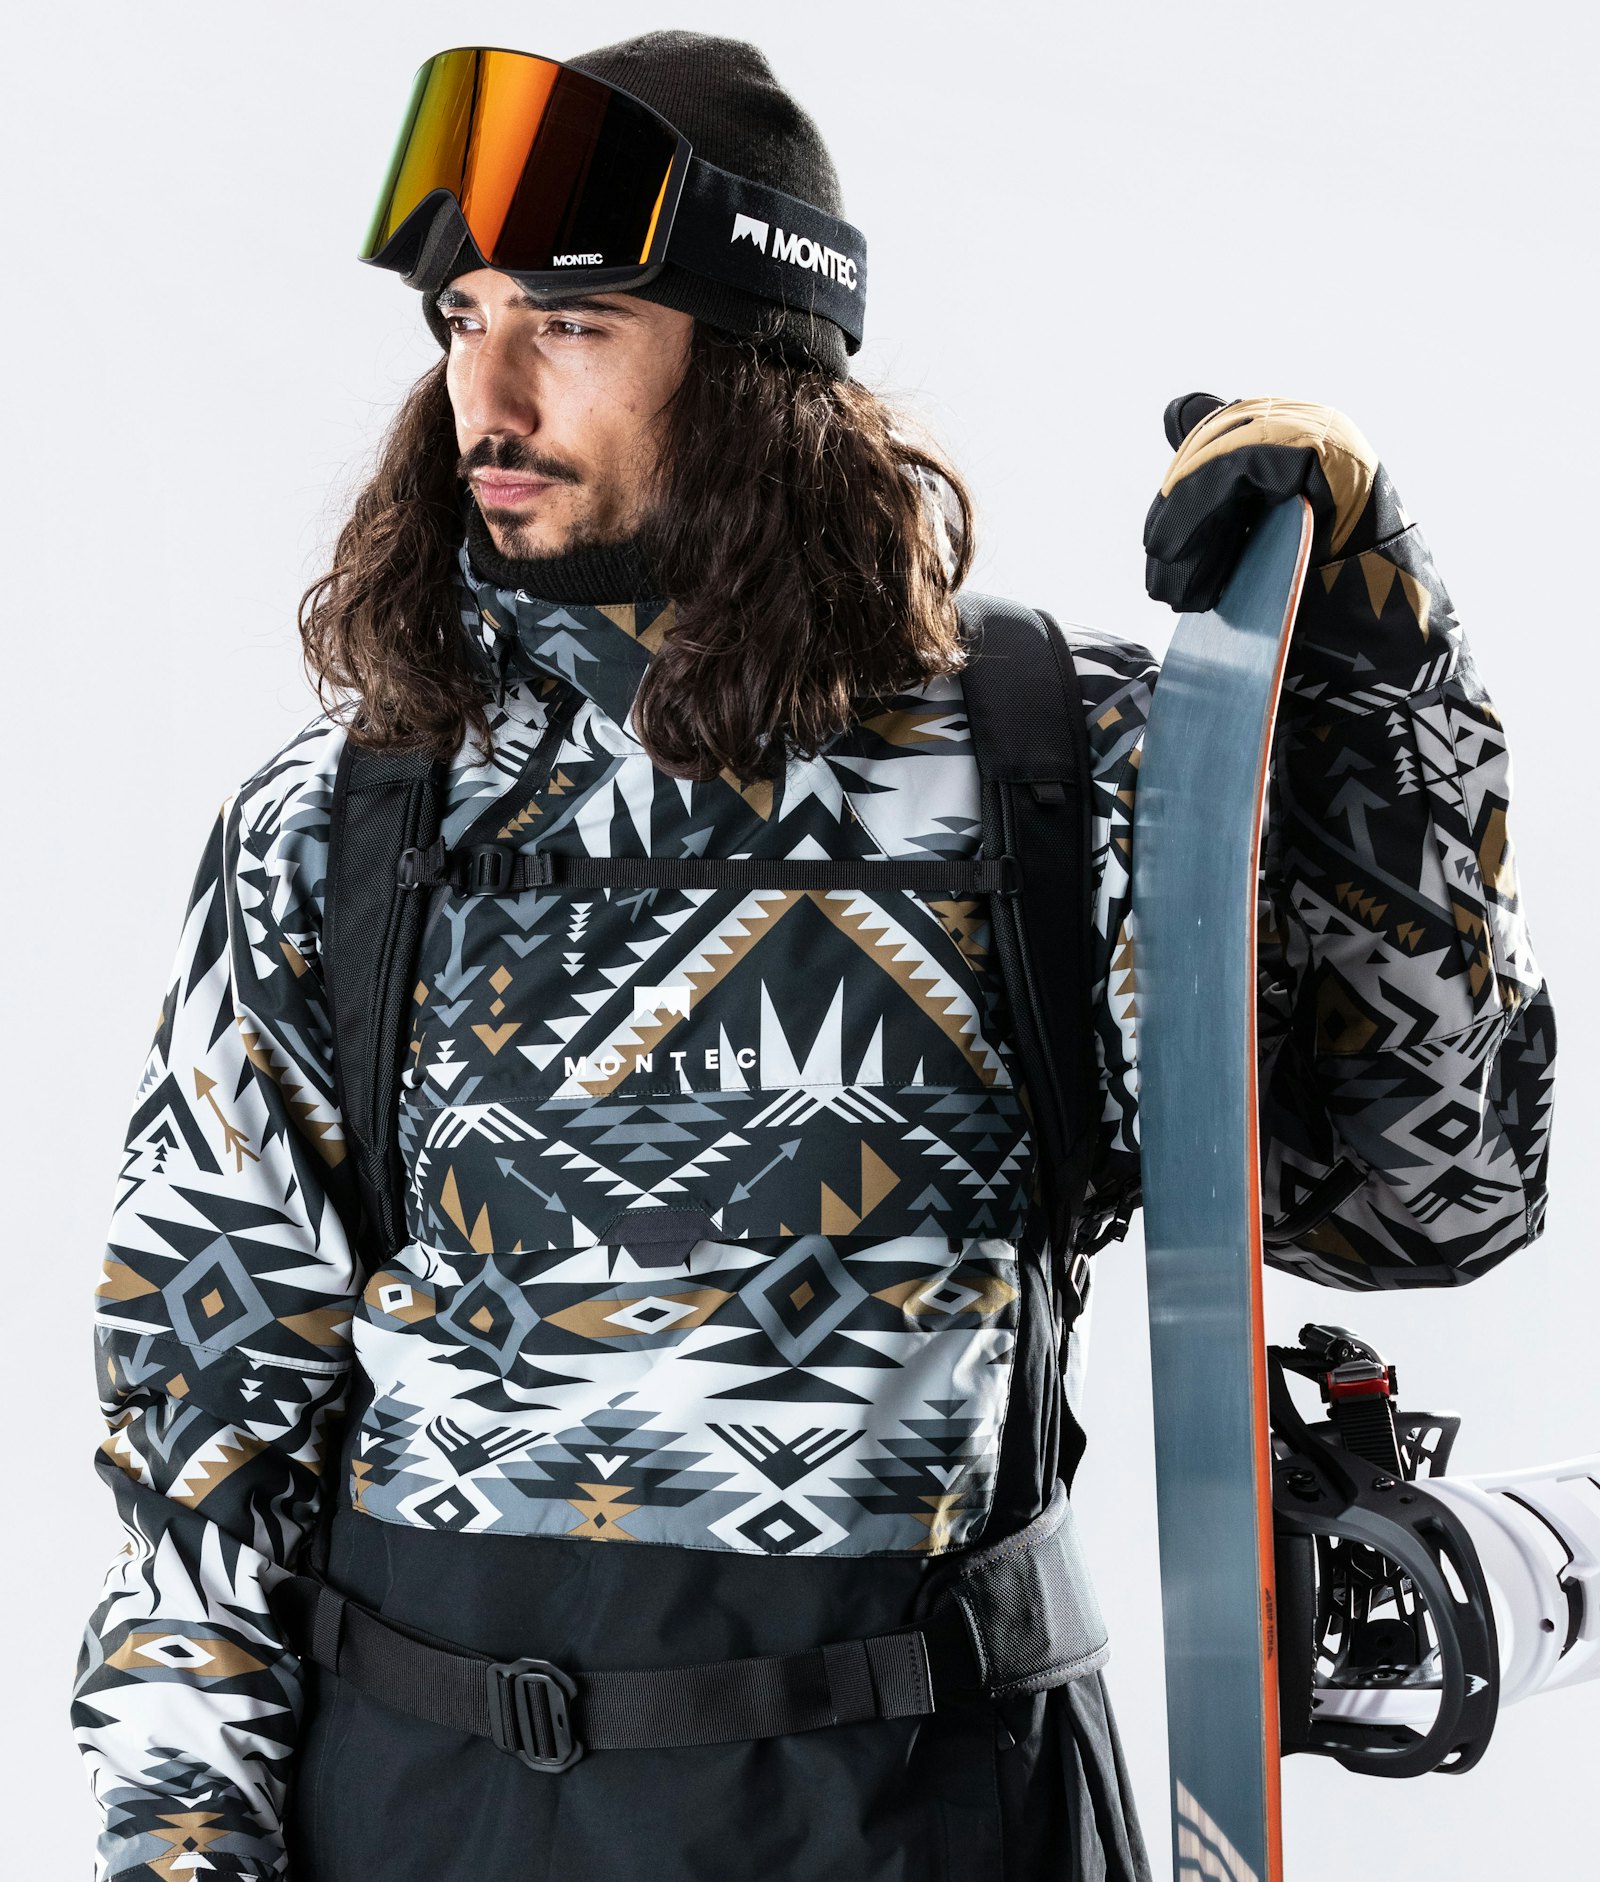 Dune 2020 Veste Snowboard Homme Komber Gold/Black